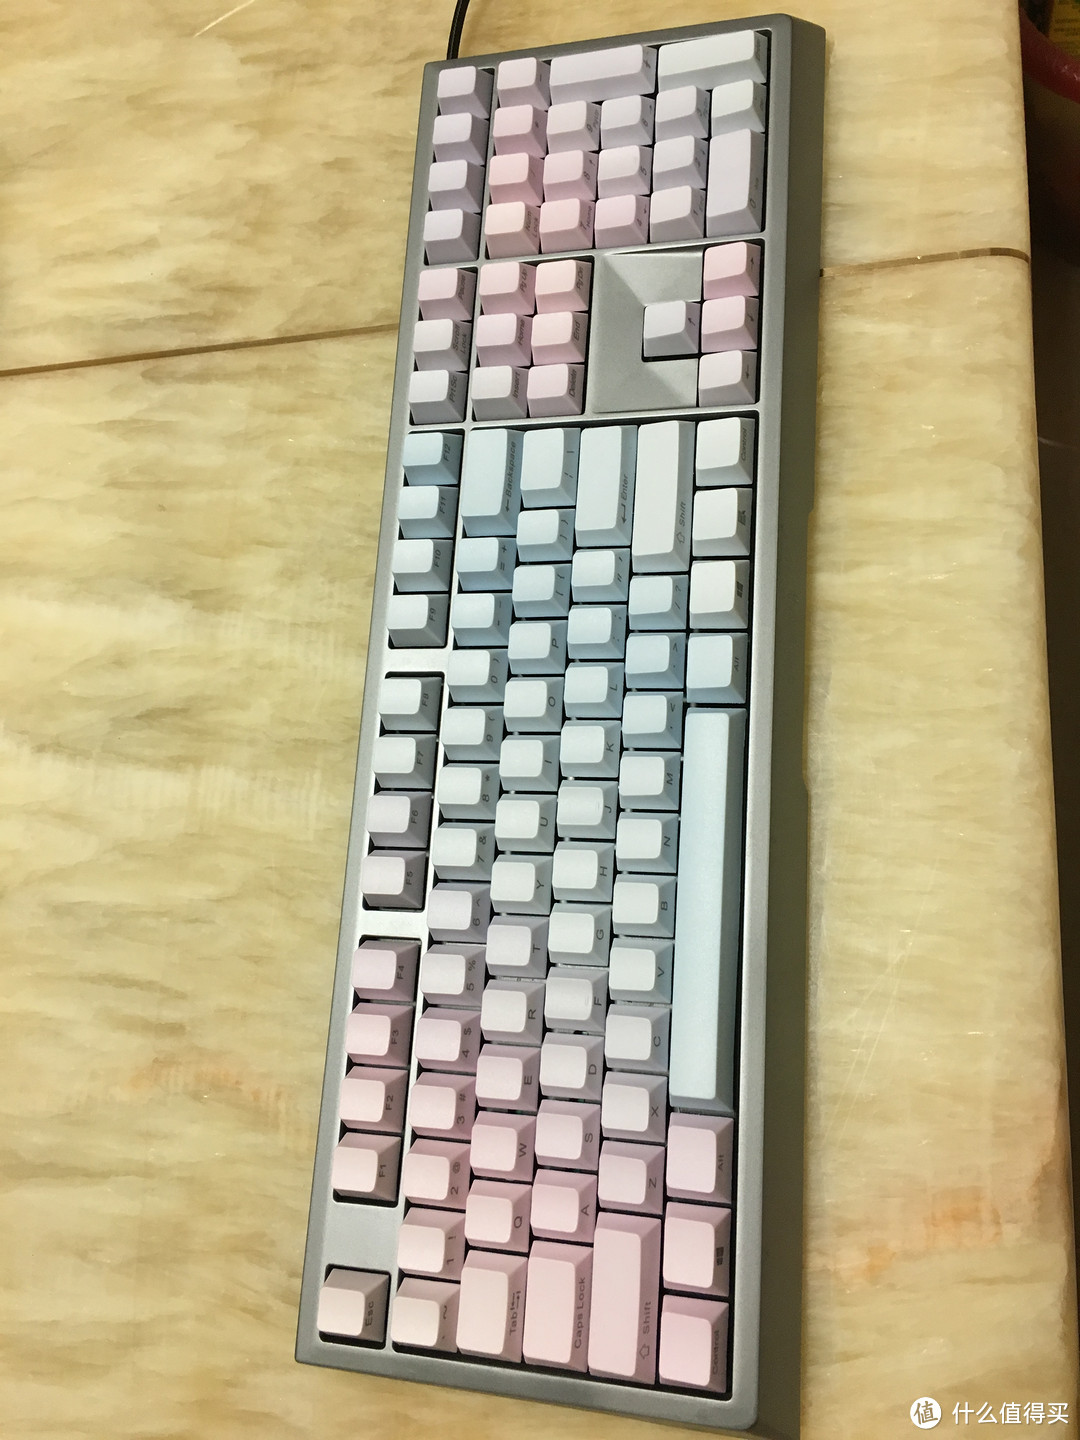 骚的一匹的CHERRY 樱桃 MX Board 6.0 G80-3930 机械键盘 蓝色妖姬键帽！